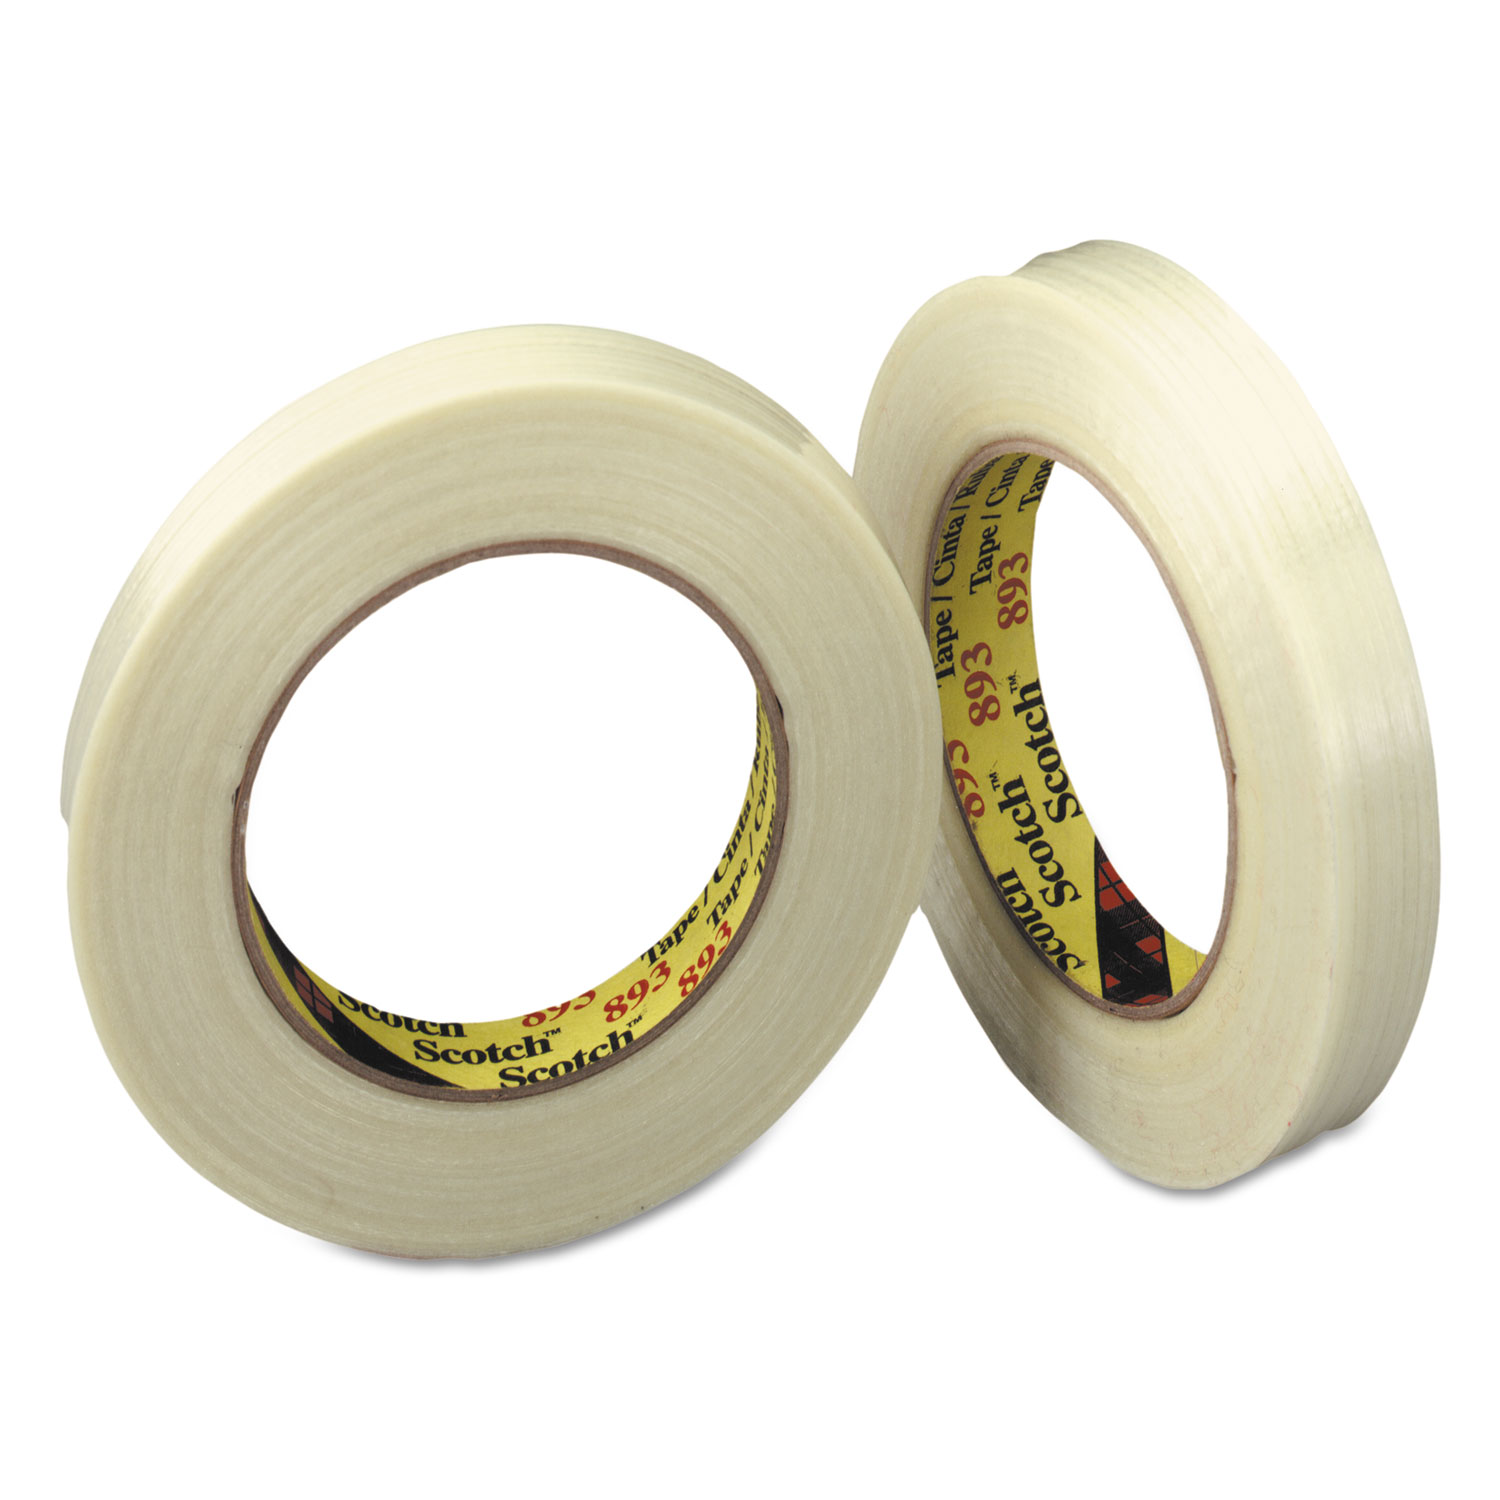  Scotch 893 General-Purpose Glass Filament Tape, 3 Core, 24 mm x 55 m, Clear (MMM8931) 